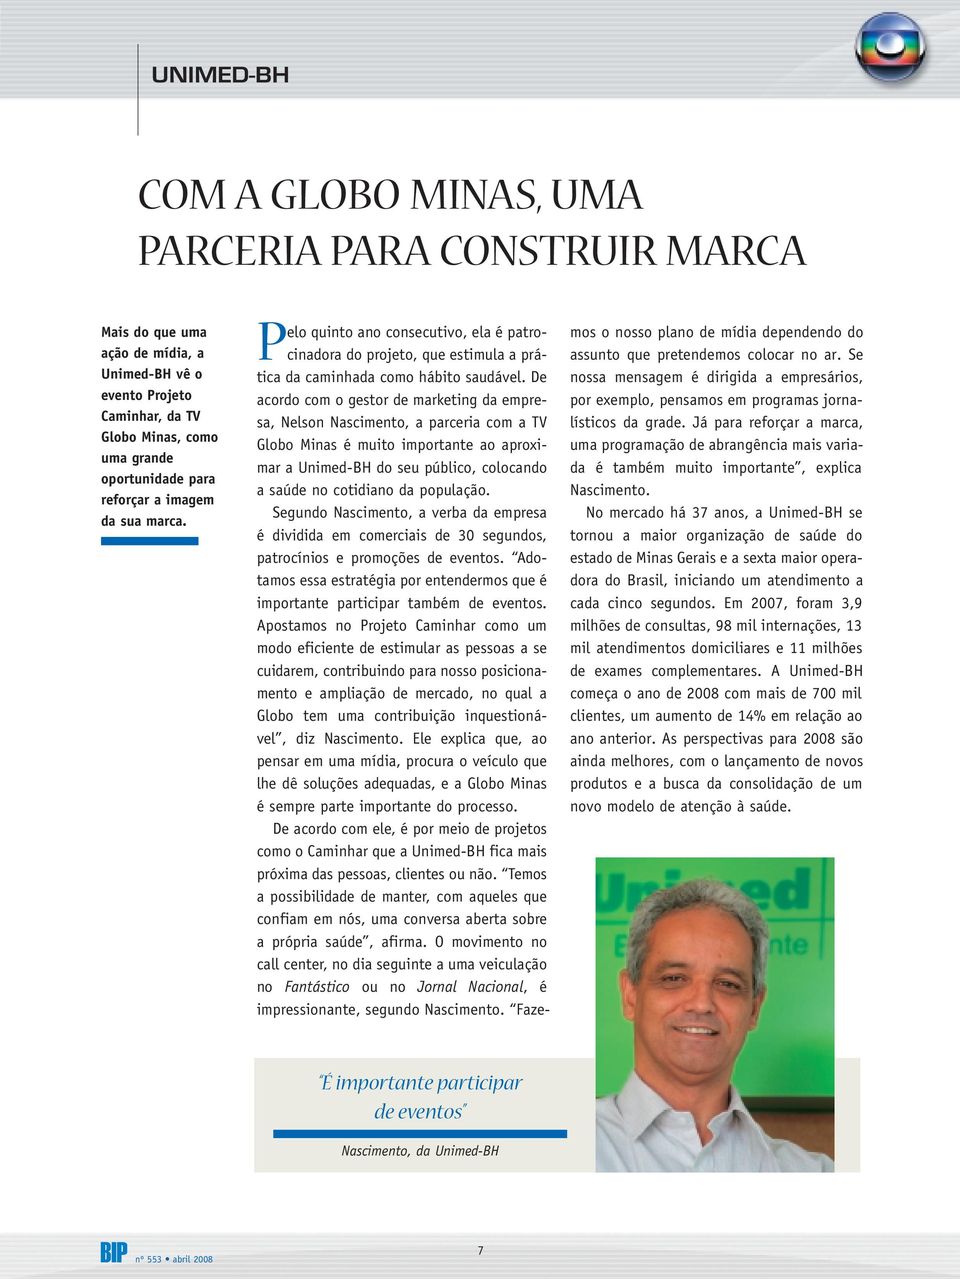 De acordo com o gestor de marketing da empresa, Nelson Nascimento, a parceria com a TV Globo Minas é muito importante ao aproximar a Unimed-BH do seu público, colocando a saúde no cotidiano da